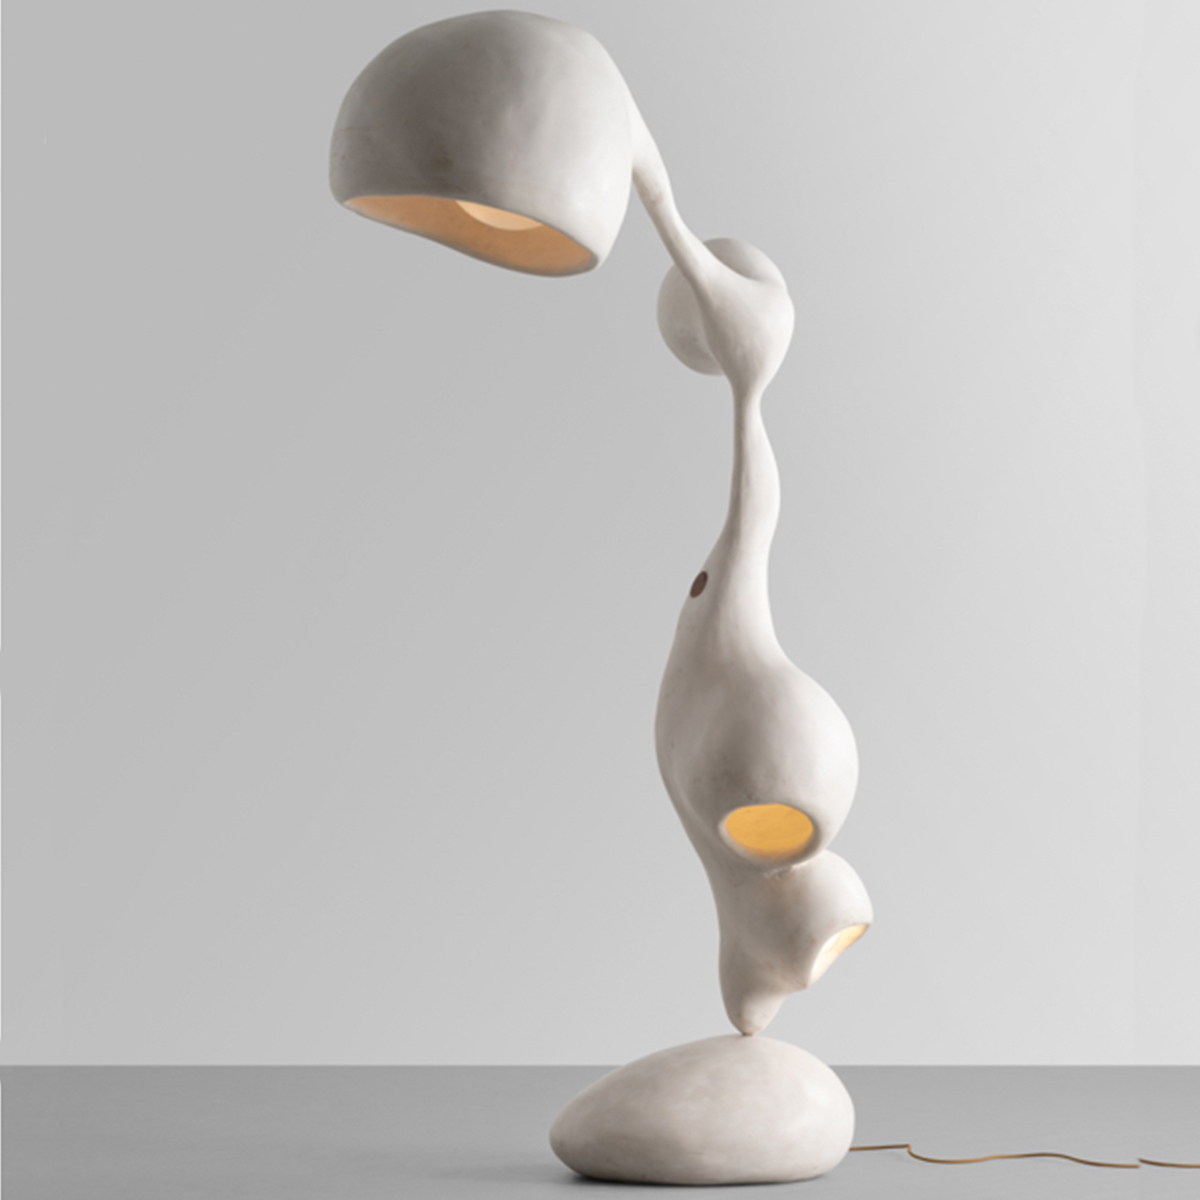 Rogan Gregory, Ovorepositoty Floor Lamp, 2022